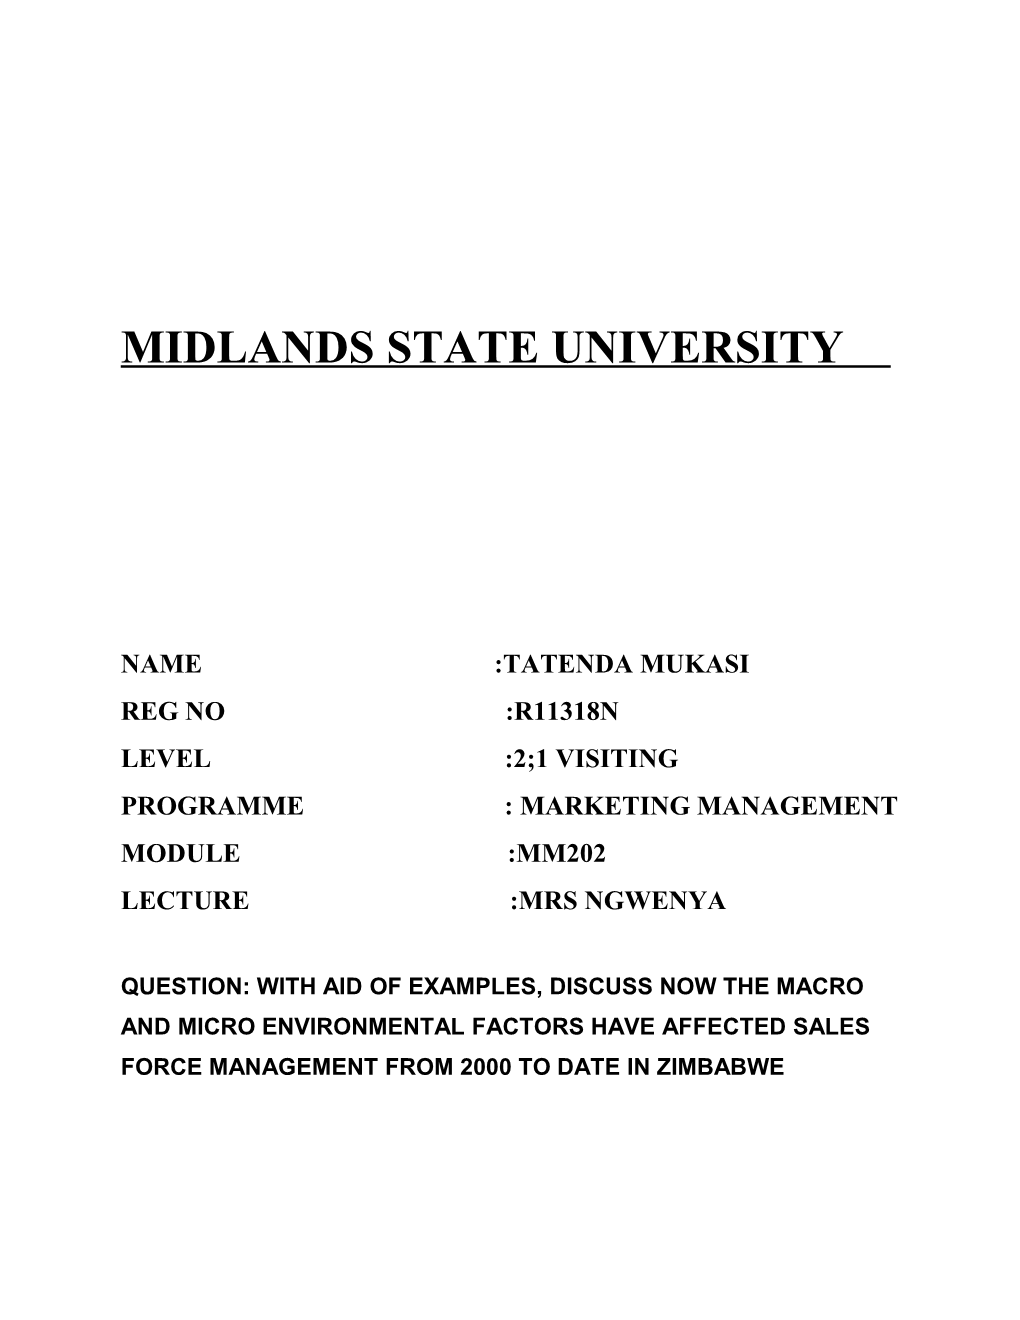 Name :Tatenda Mukasi